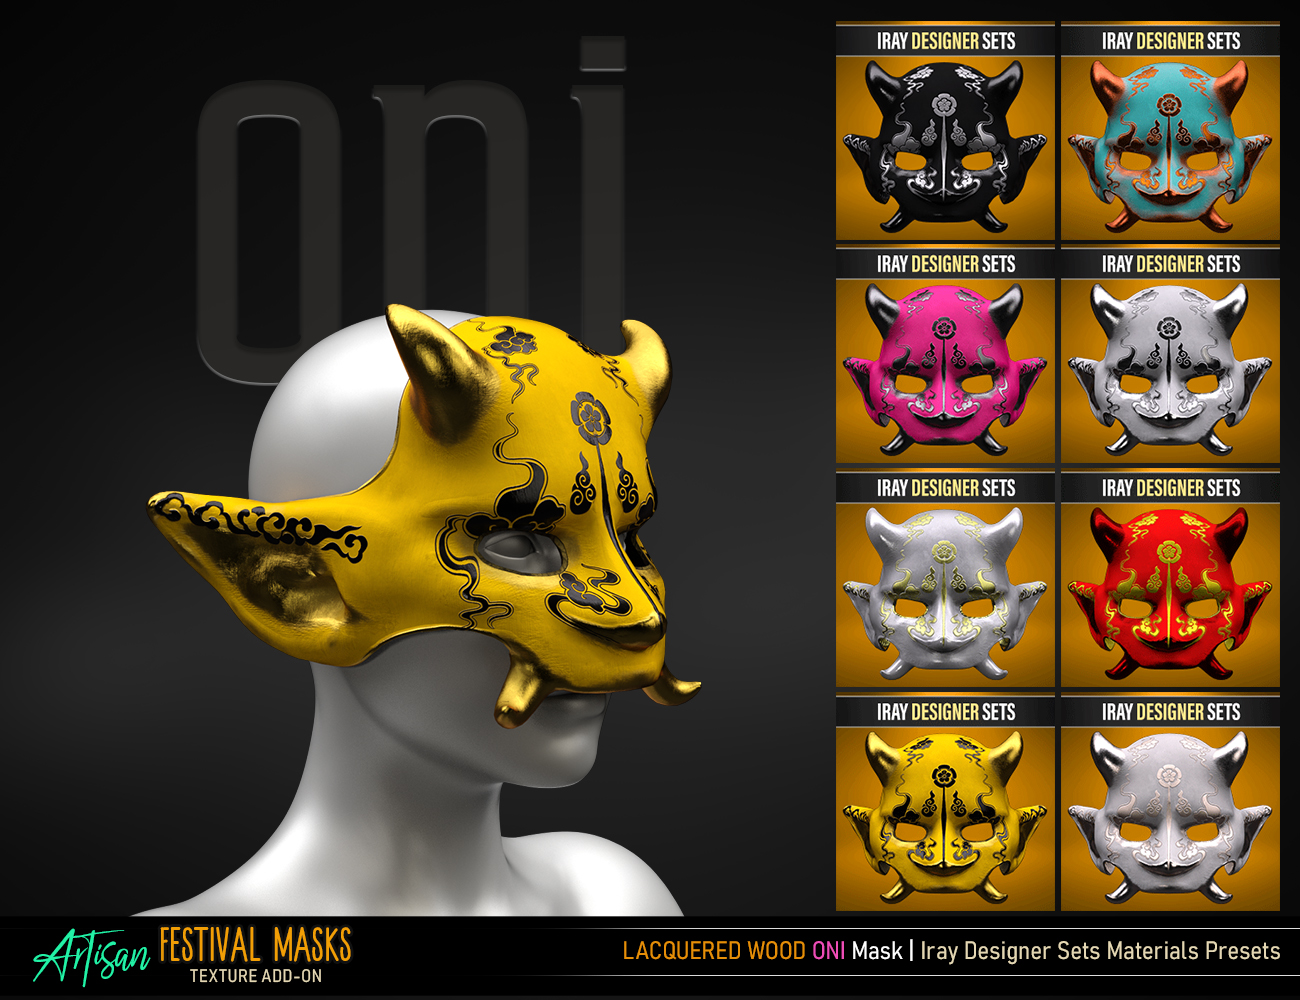 Artisan Festival Masks Add-On by: FenixPhoenixEsid, 3D Models by Daz 3D